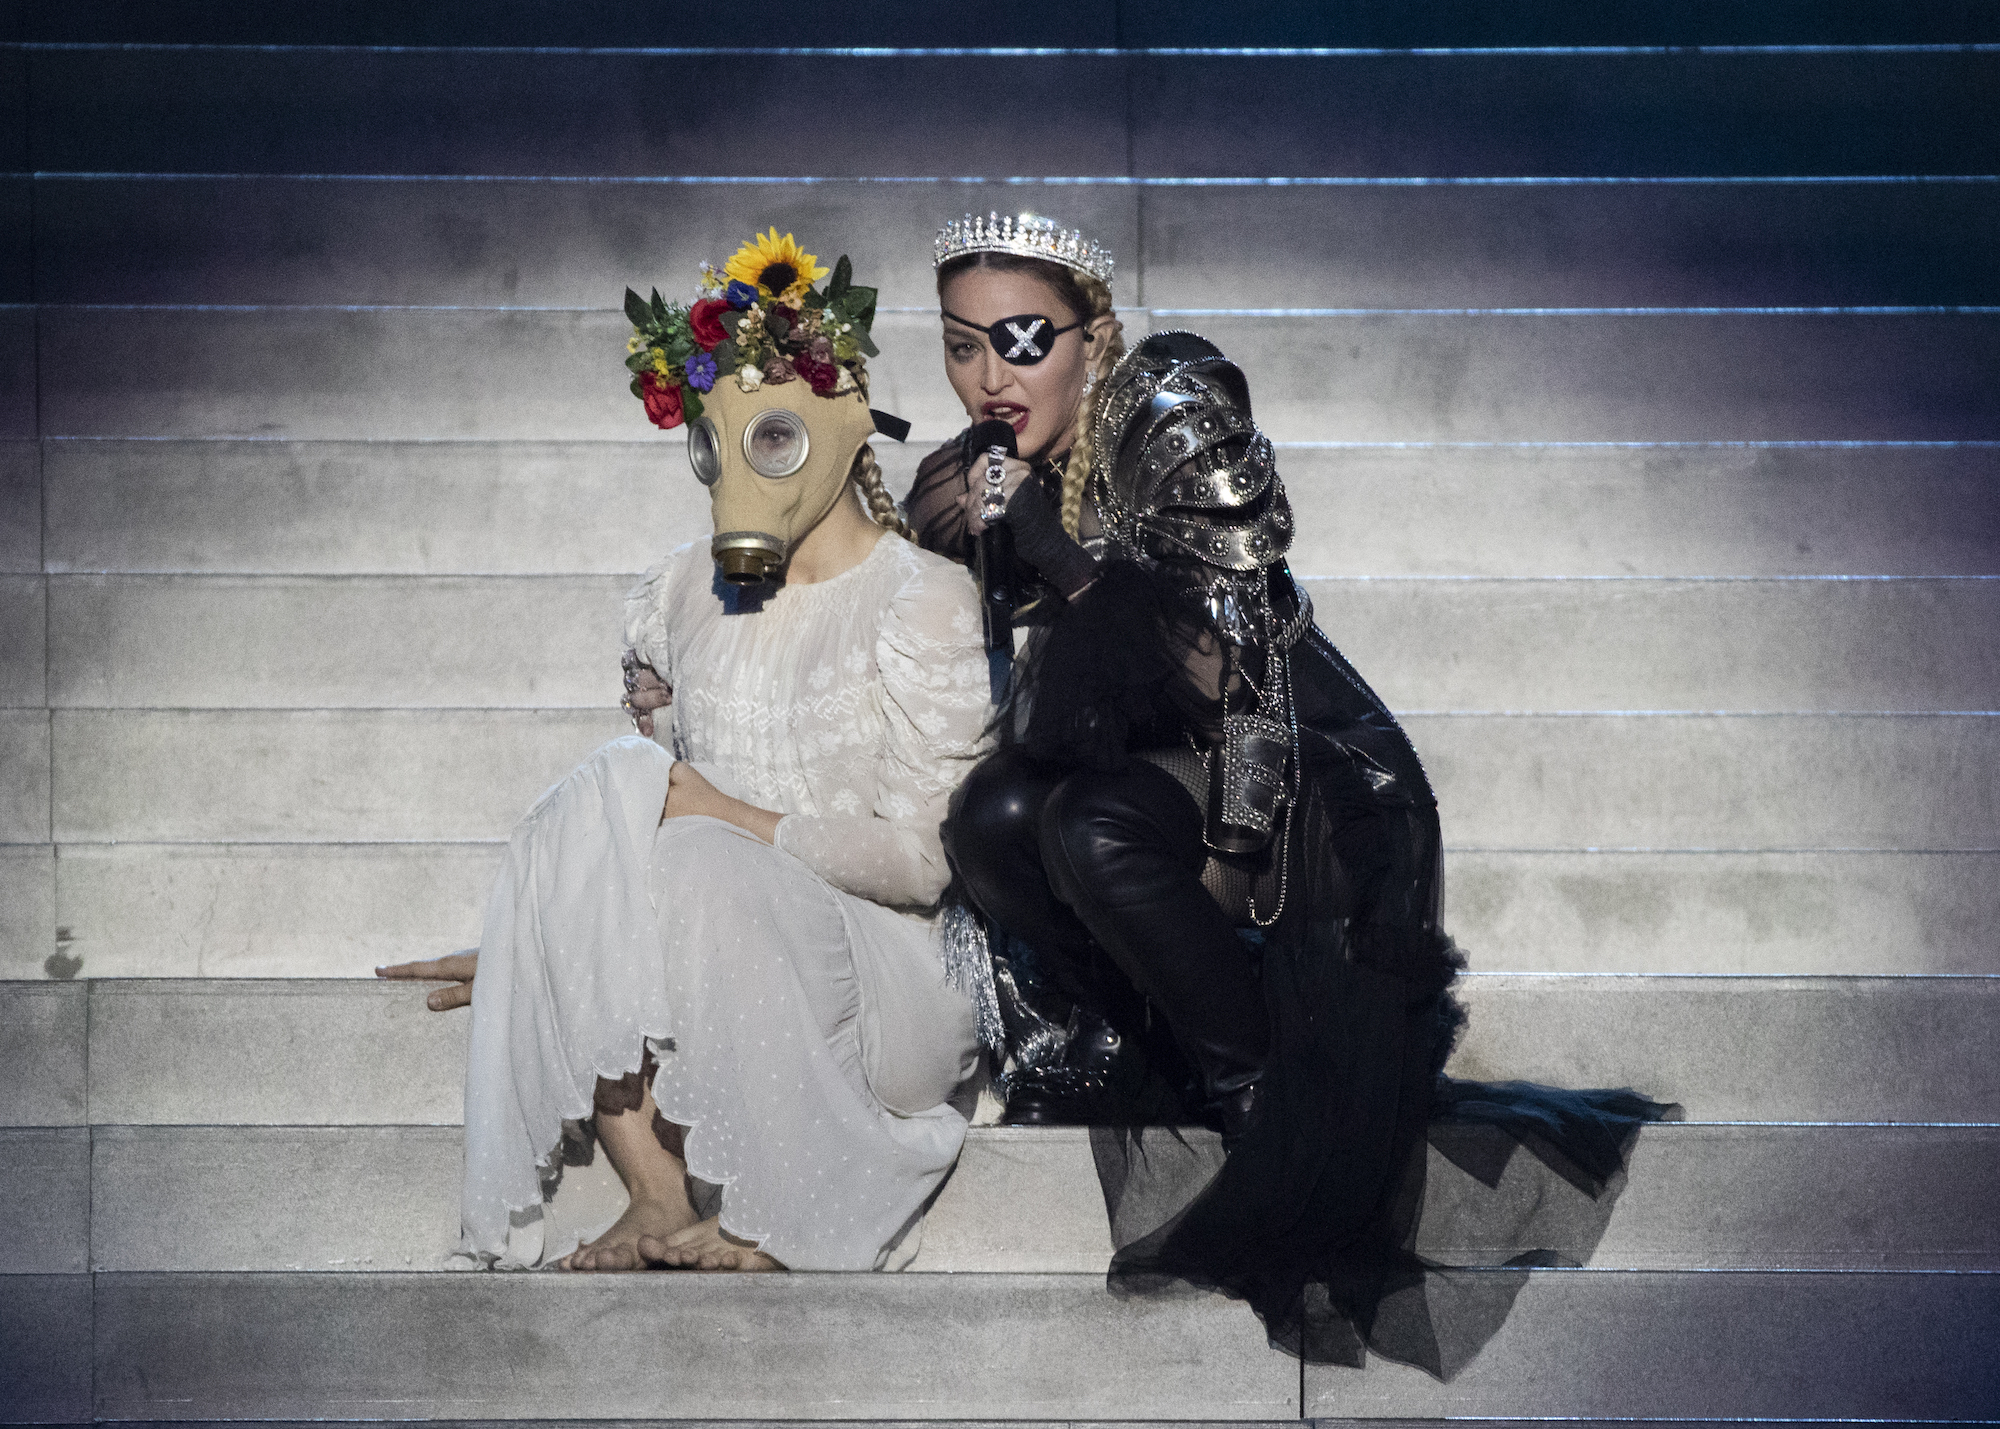 Darüber wurde in den vergangenen Tagen viel diskutiert: Madonnas Auftritt beim ESC 2019 in Tel Aviv